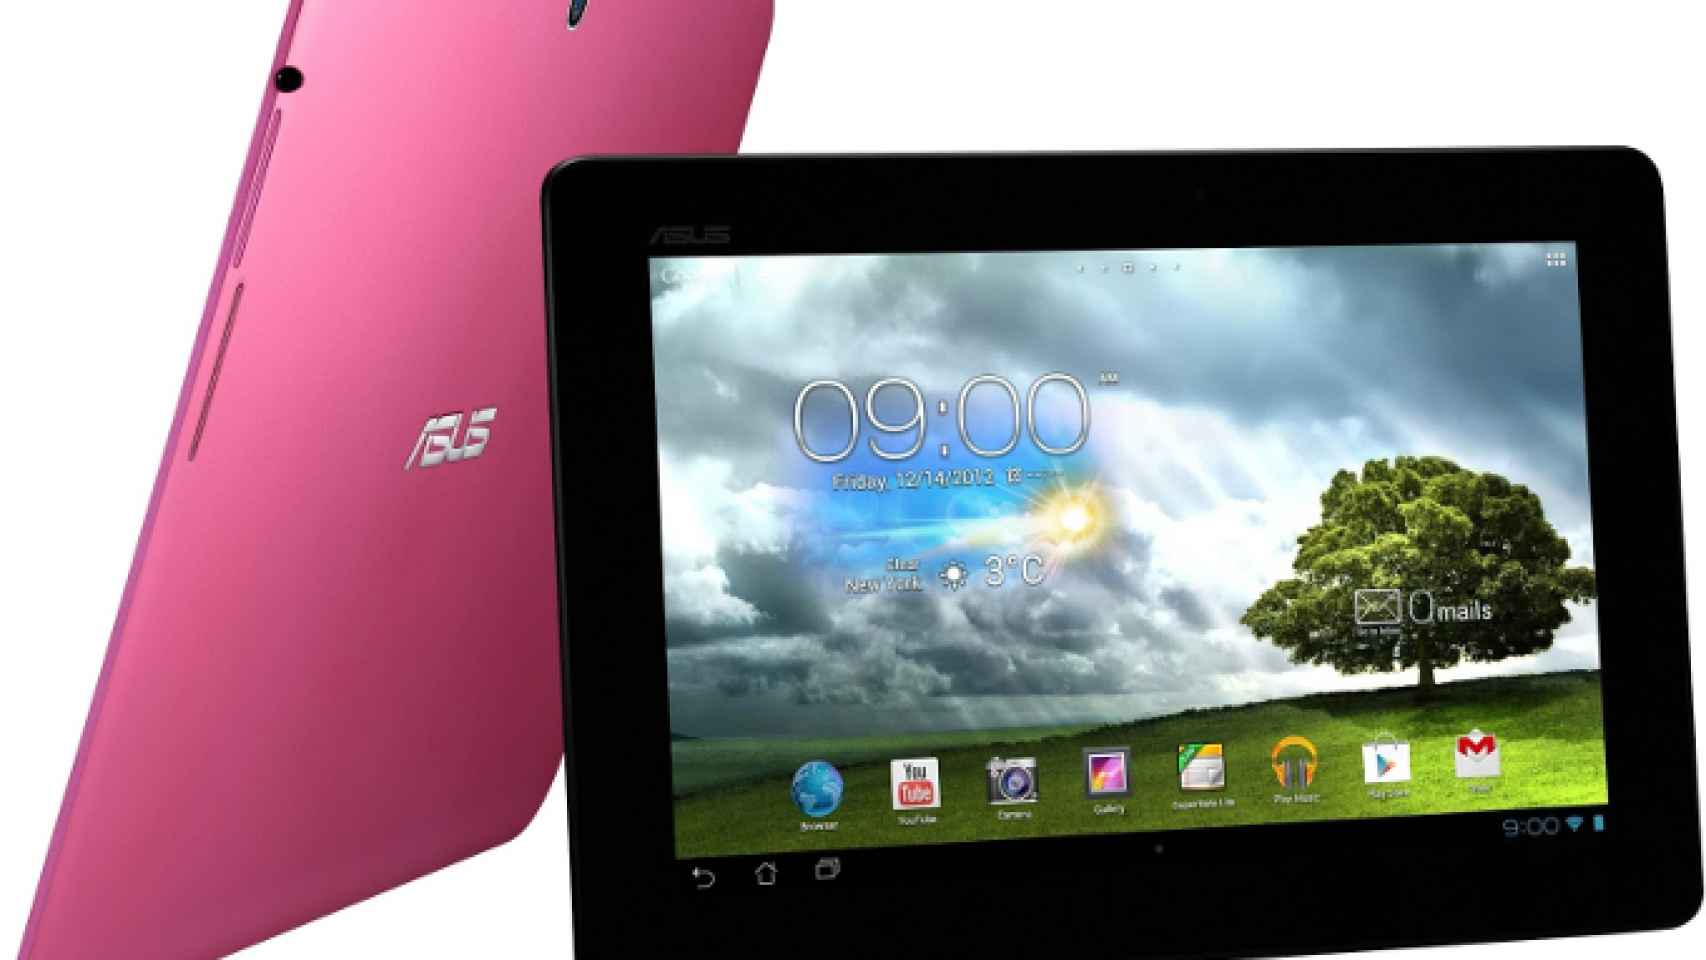 Asus presenta la MeMO Pad Smart, una tablet de 10 pulgadas por menos de 330€